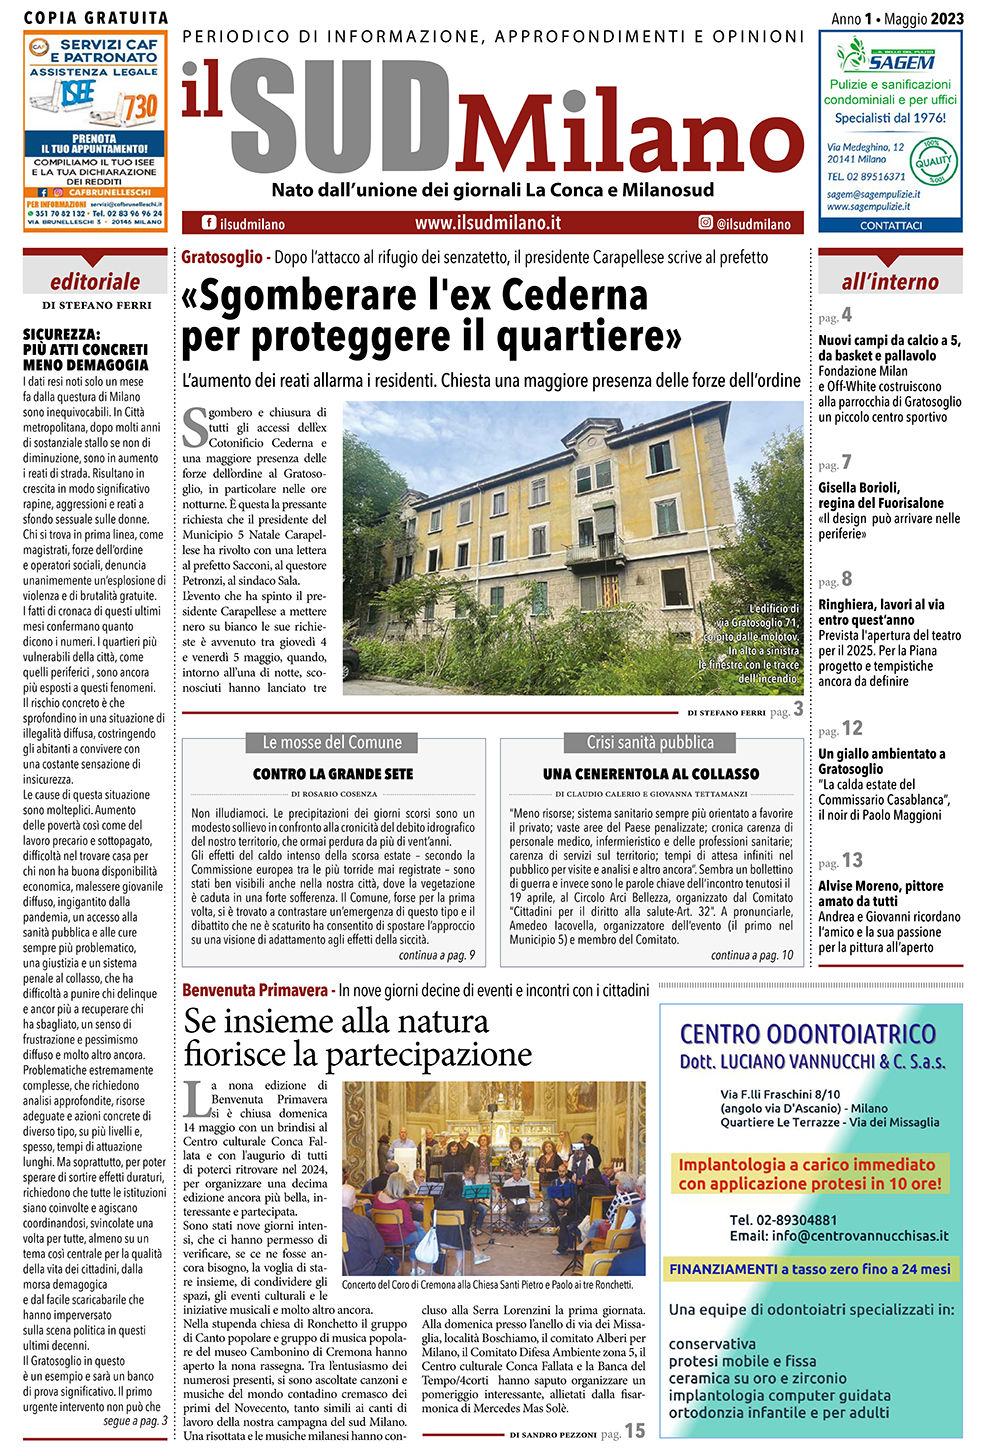 Prima pagina del giornale il SUD Milano di maggio 2023